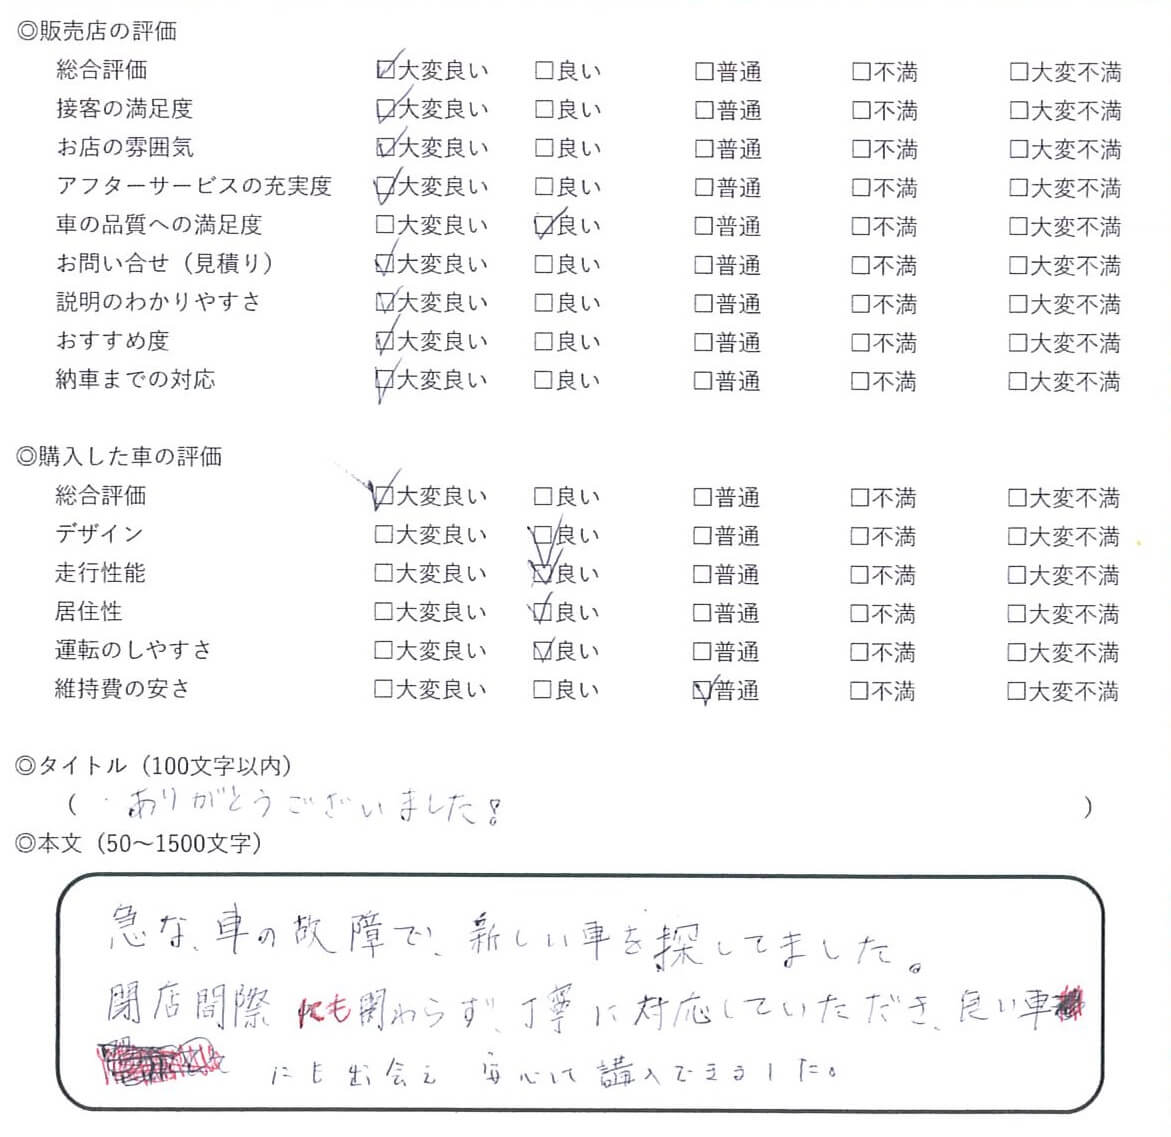 2018/02/08 - ヨッシー - 日産・セレナ